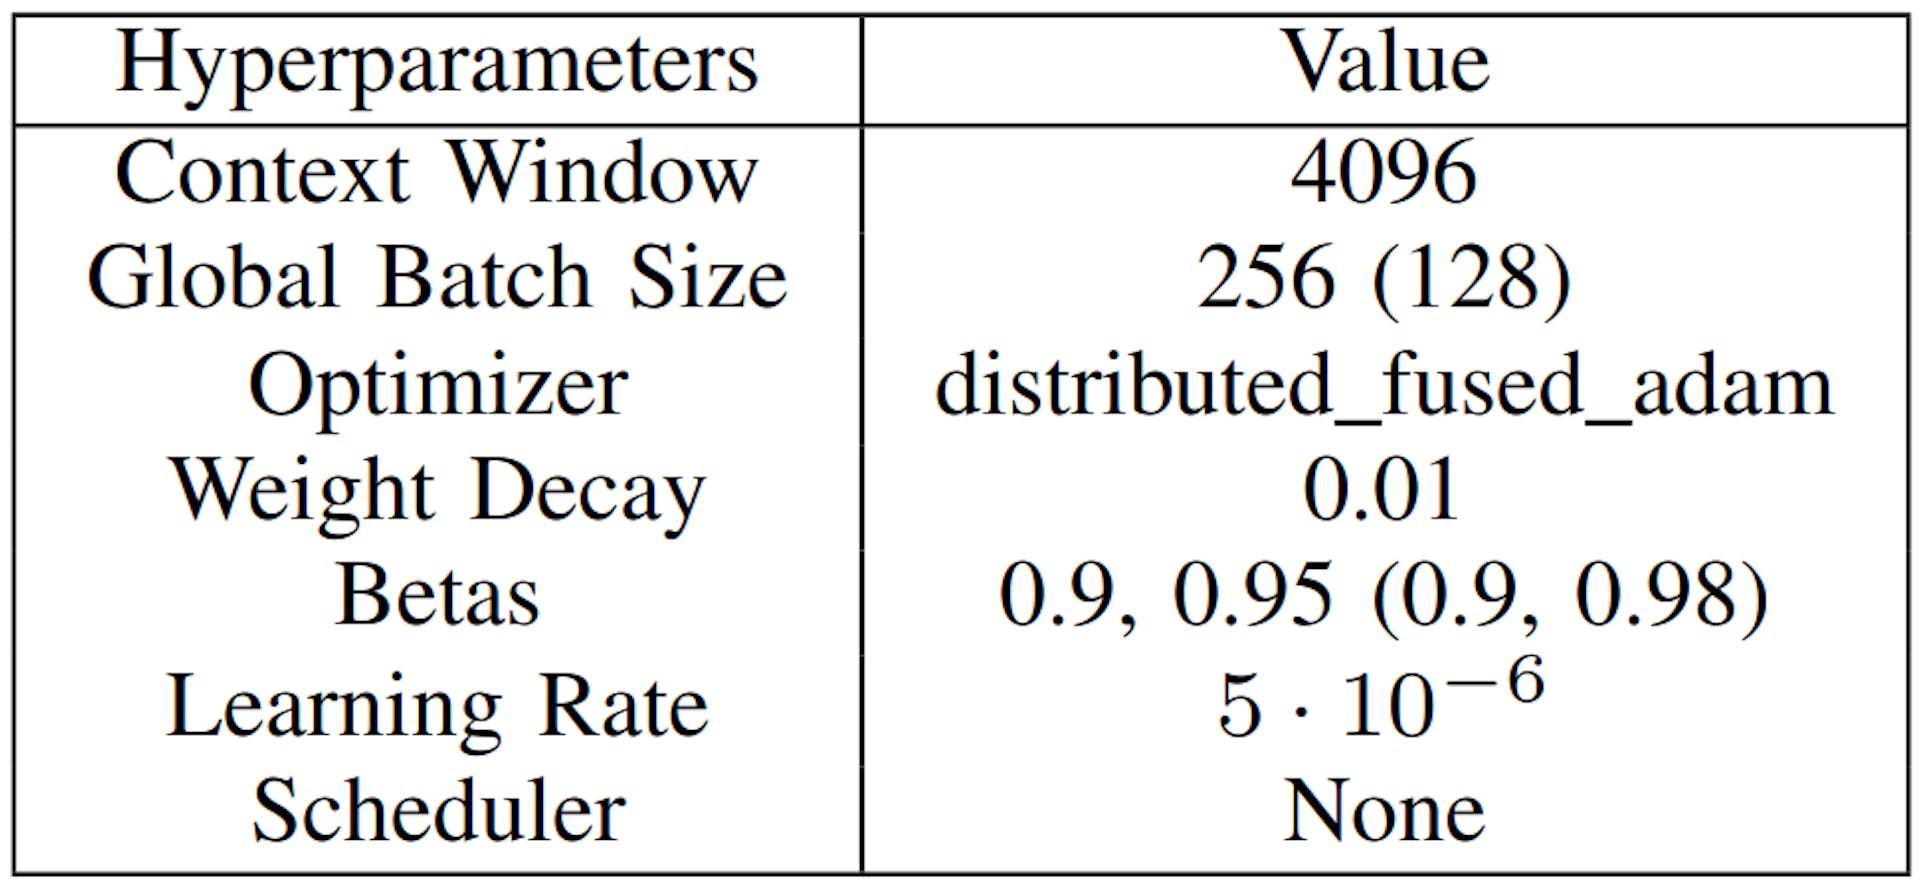 TABLEAU VI : Hyperparamètres DAPT et SFT, valeurs SFT indiquées entre parenthèses (si différentes de DAPT).